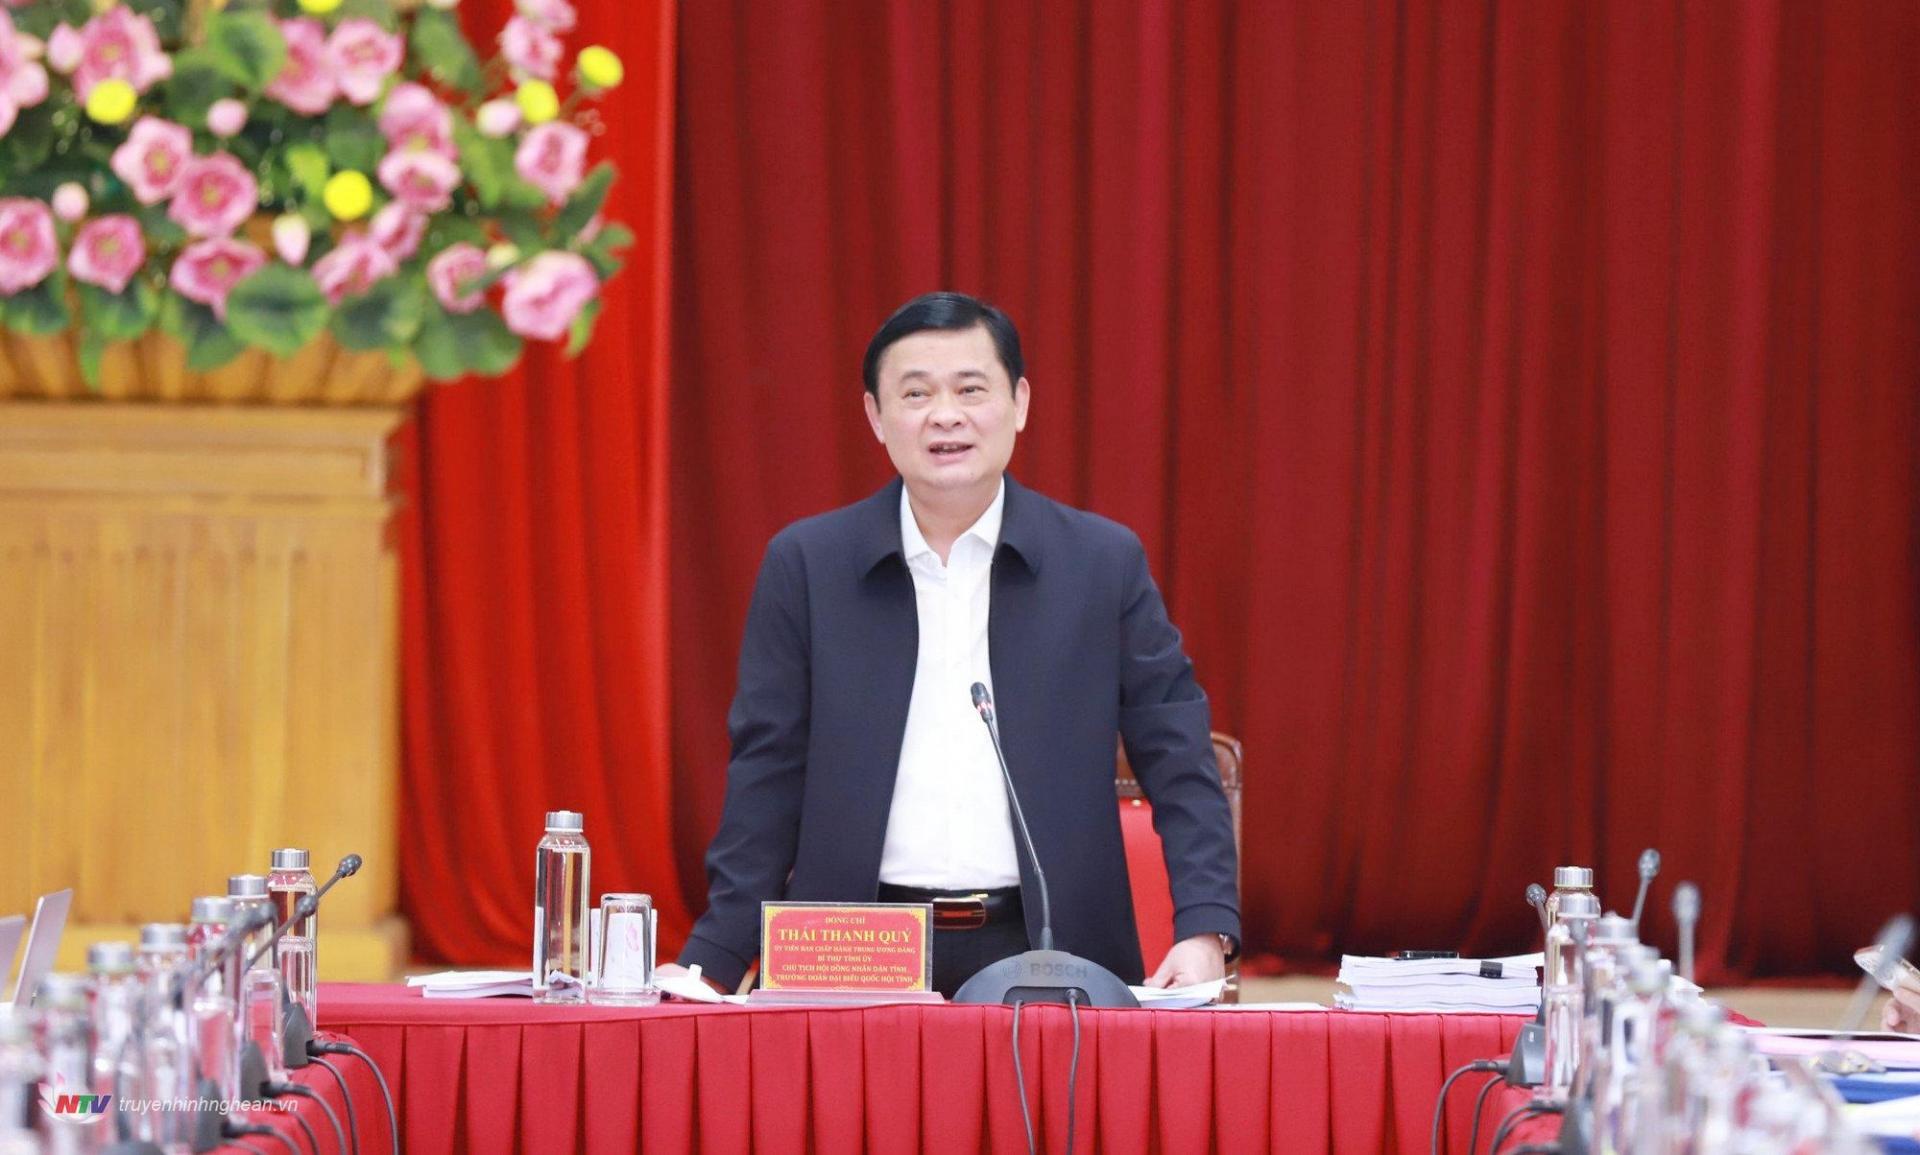 Bí thư Tỉnh ủy Thái Thanh Quý phát biểu kết luận nội dung về ban hành Nghị quyết và Đề án xây dựng, phát triển huyện Đô Lương đến năm 2030, tầm nhìn đến năm 2045. 